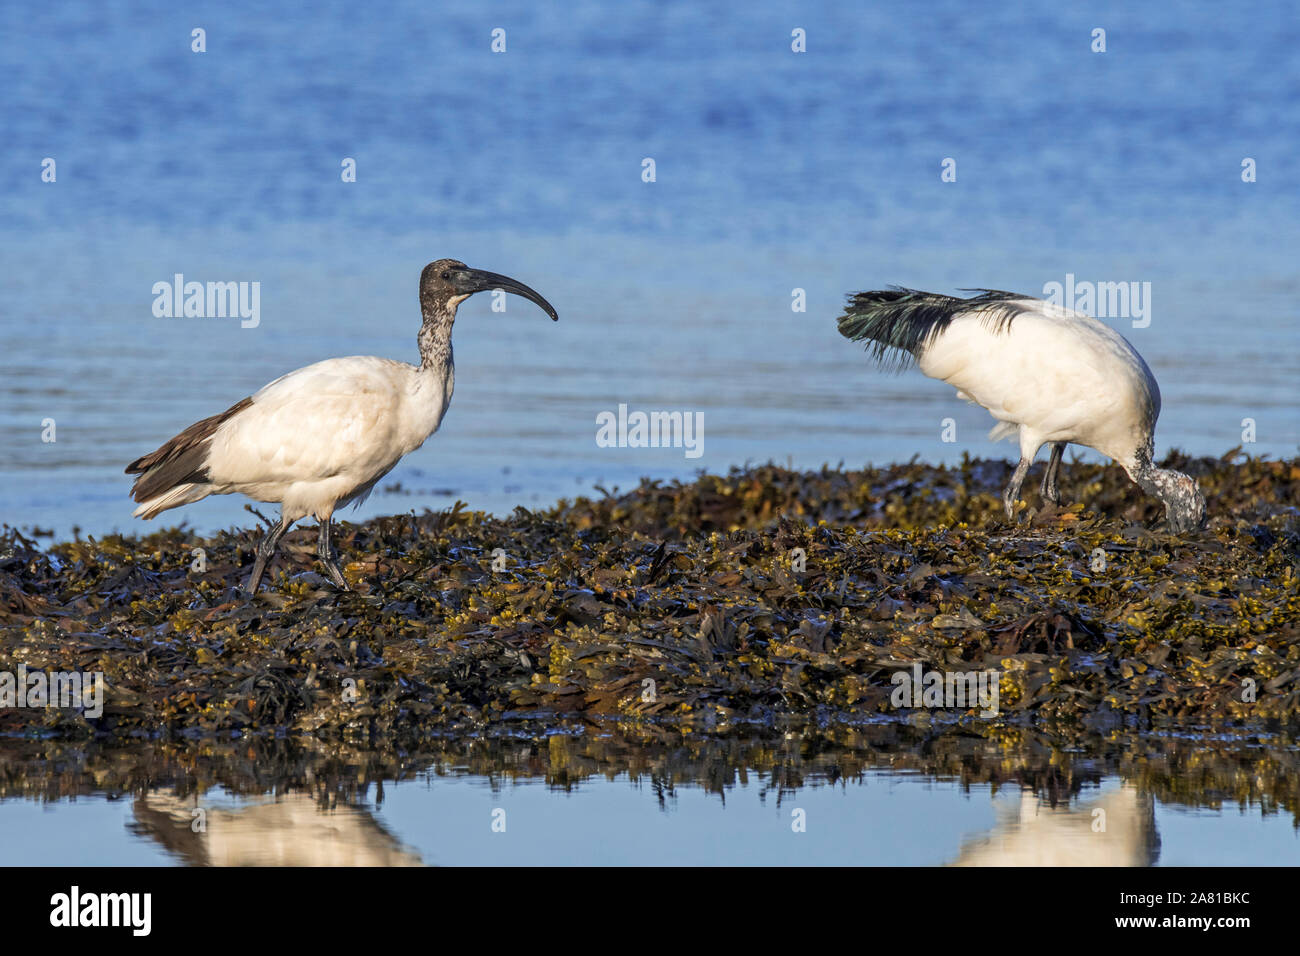 Zwei Afrikanische heilige Ibisse (Threskiornis aethiopicus) eingeführten Arten der Nahrungssuche auf Algen bedeckten Strand entlang der Atlantischen Küste in der Bretagne, Frankreich Stockfoto